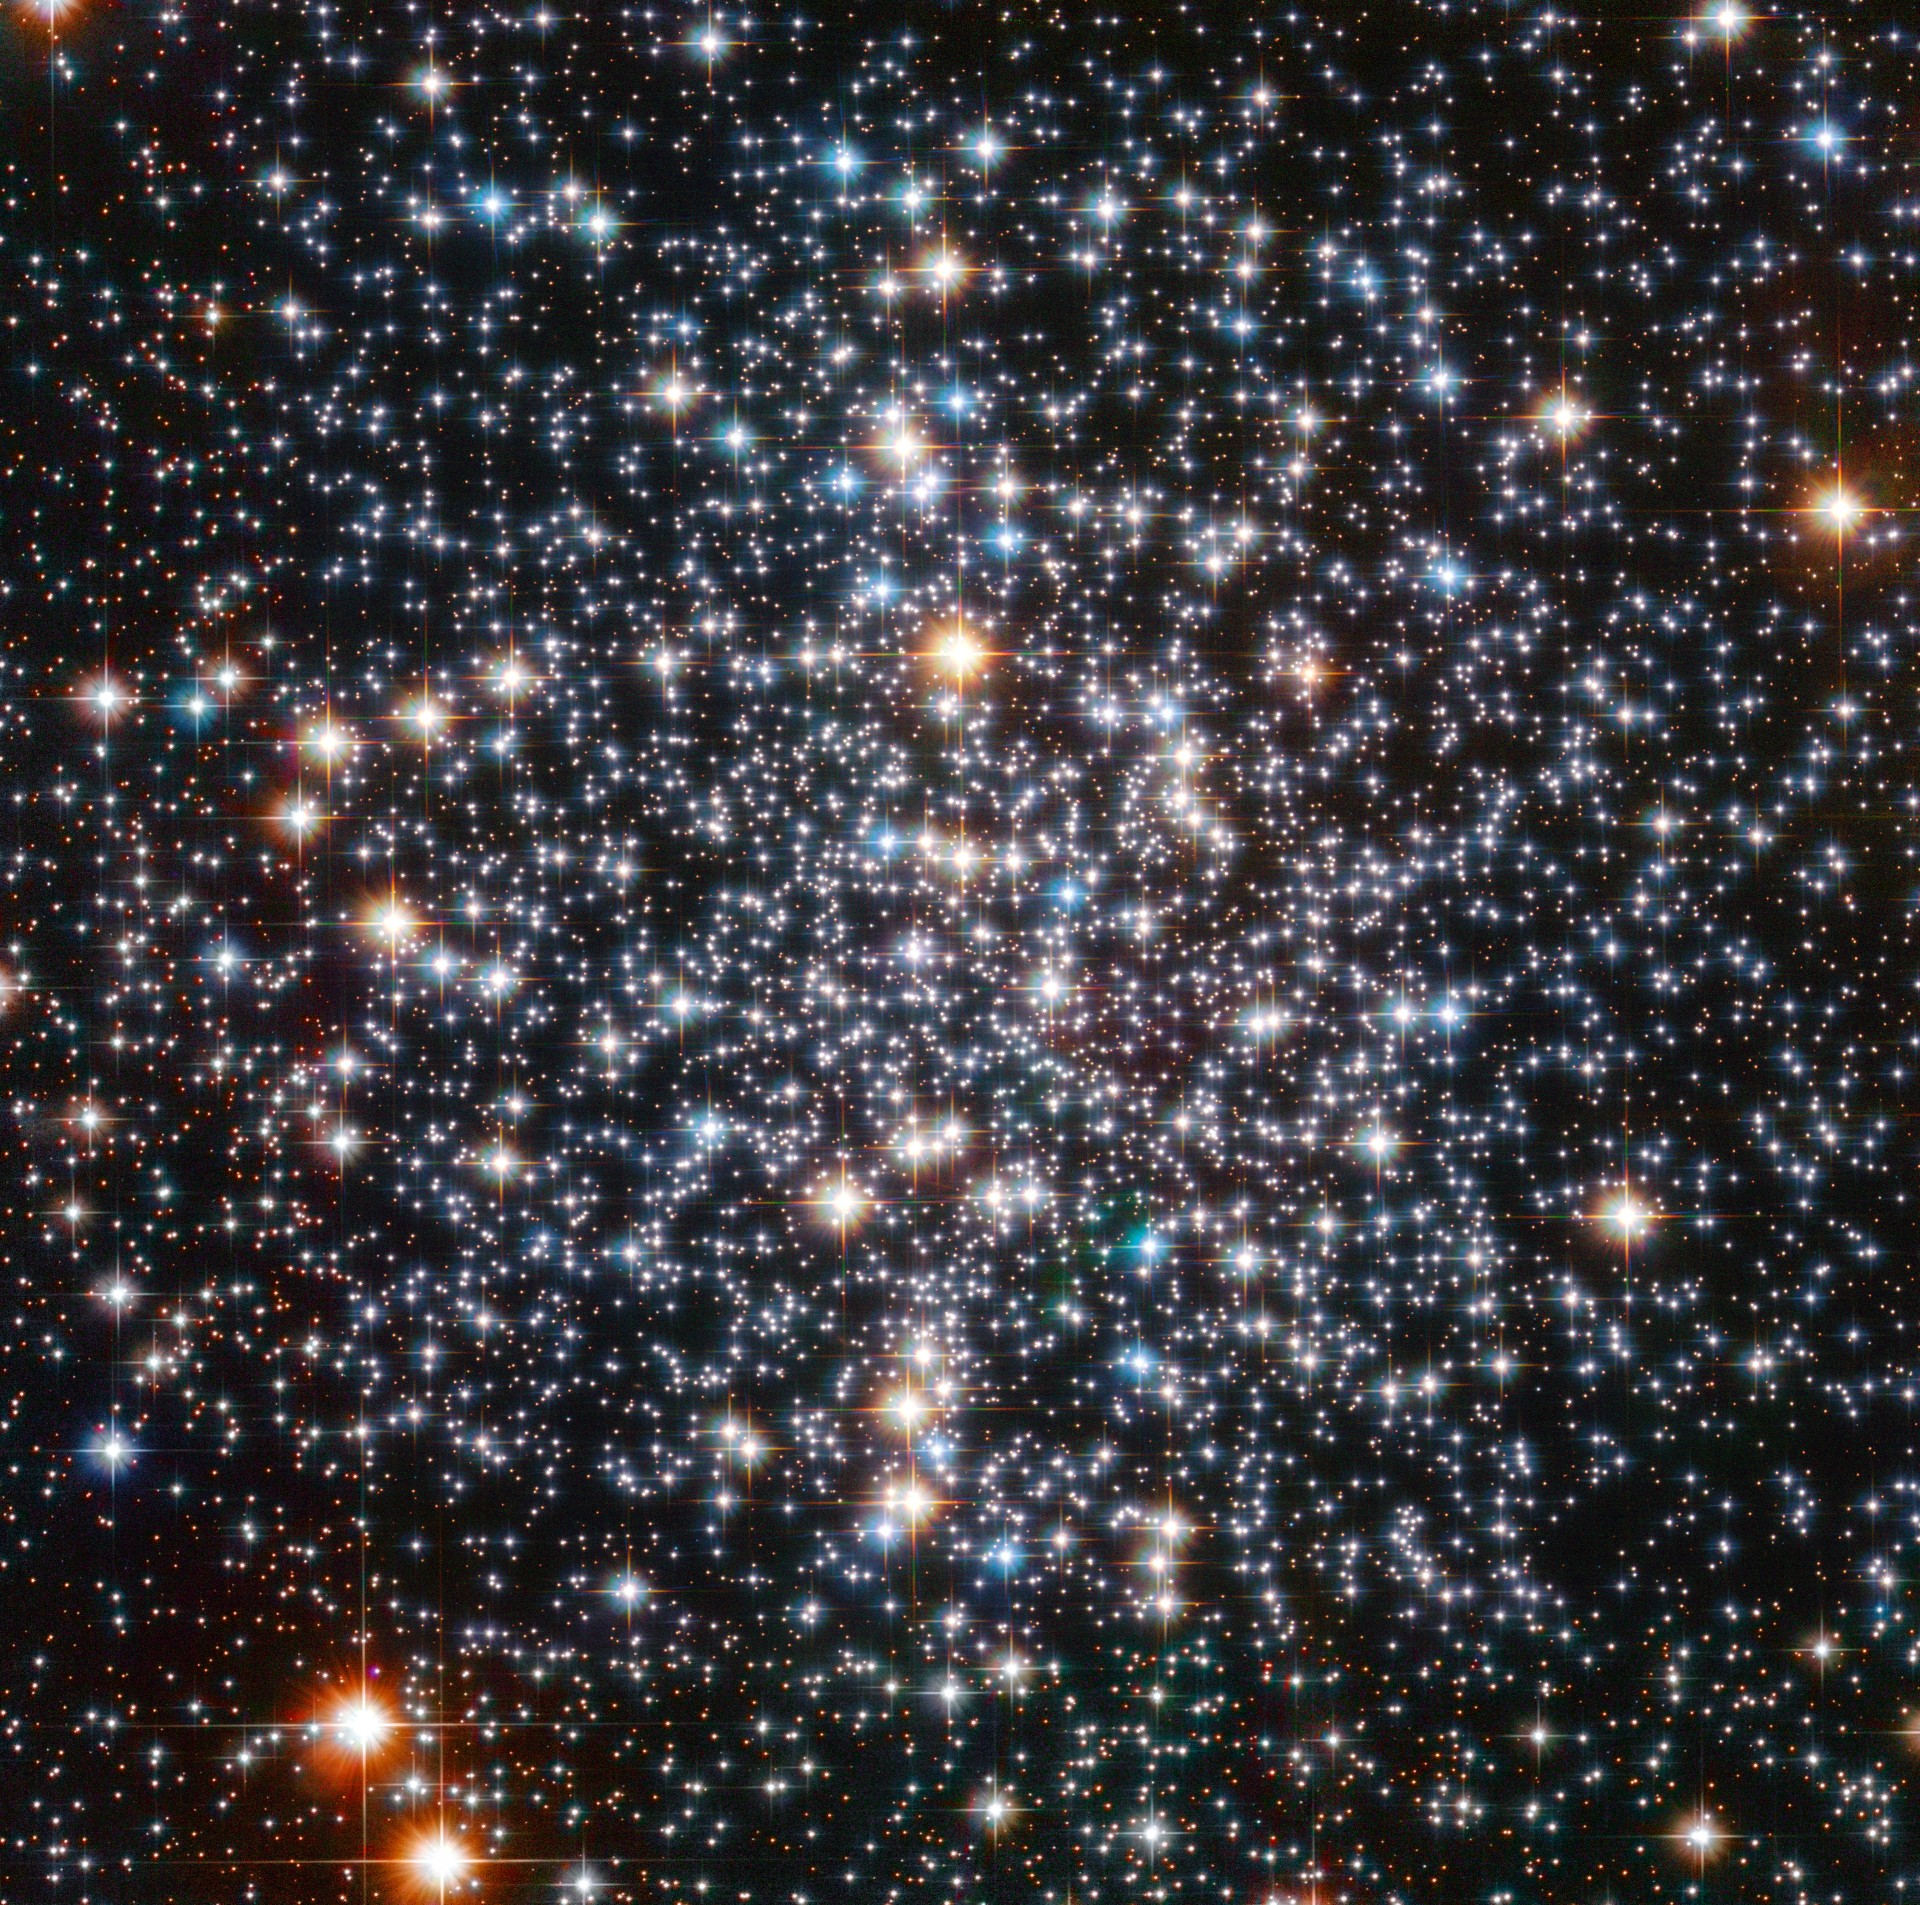 哈勃太空望远镜揭示潜伏在我们后院球状星团梅西耶4中的罕见黑洞